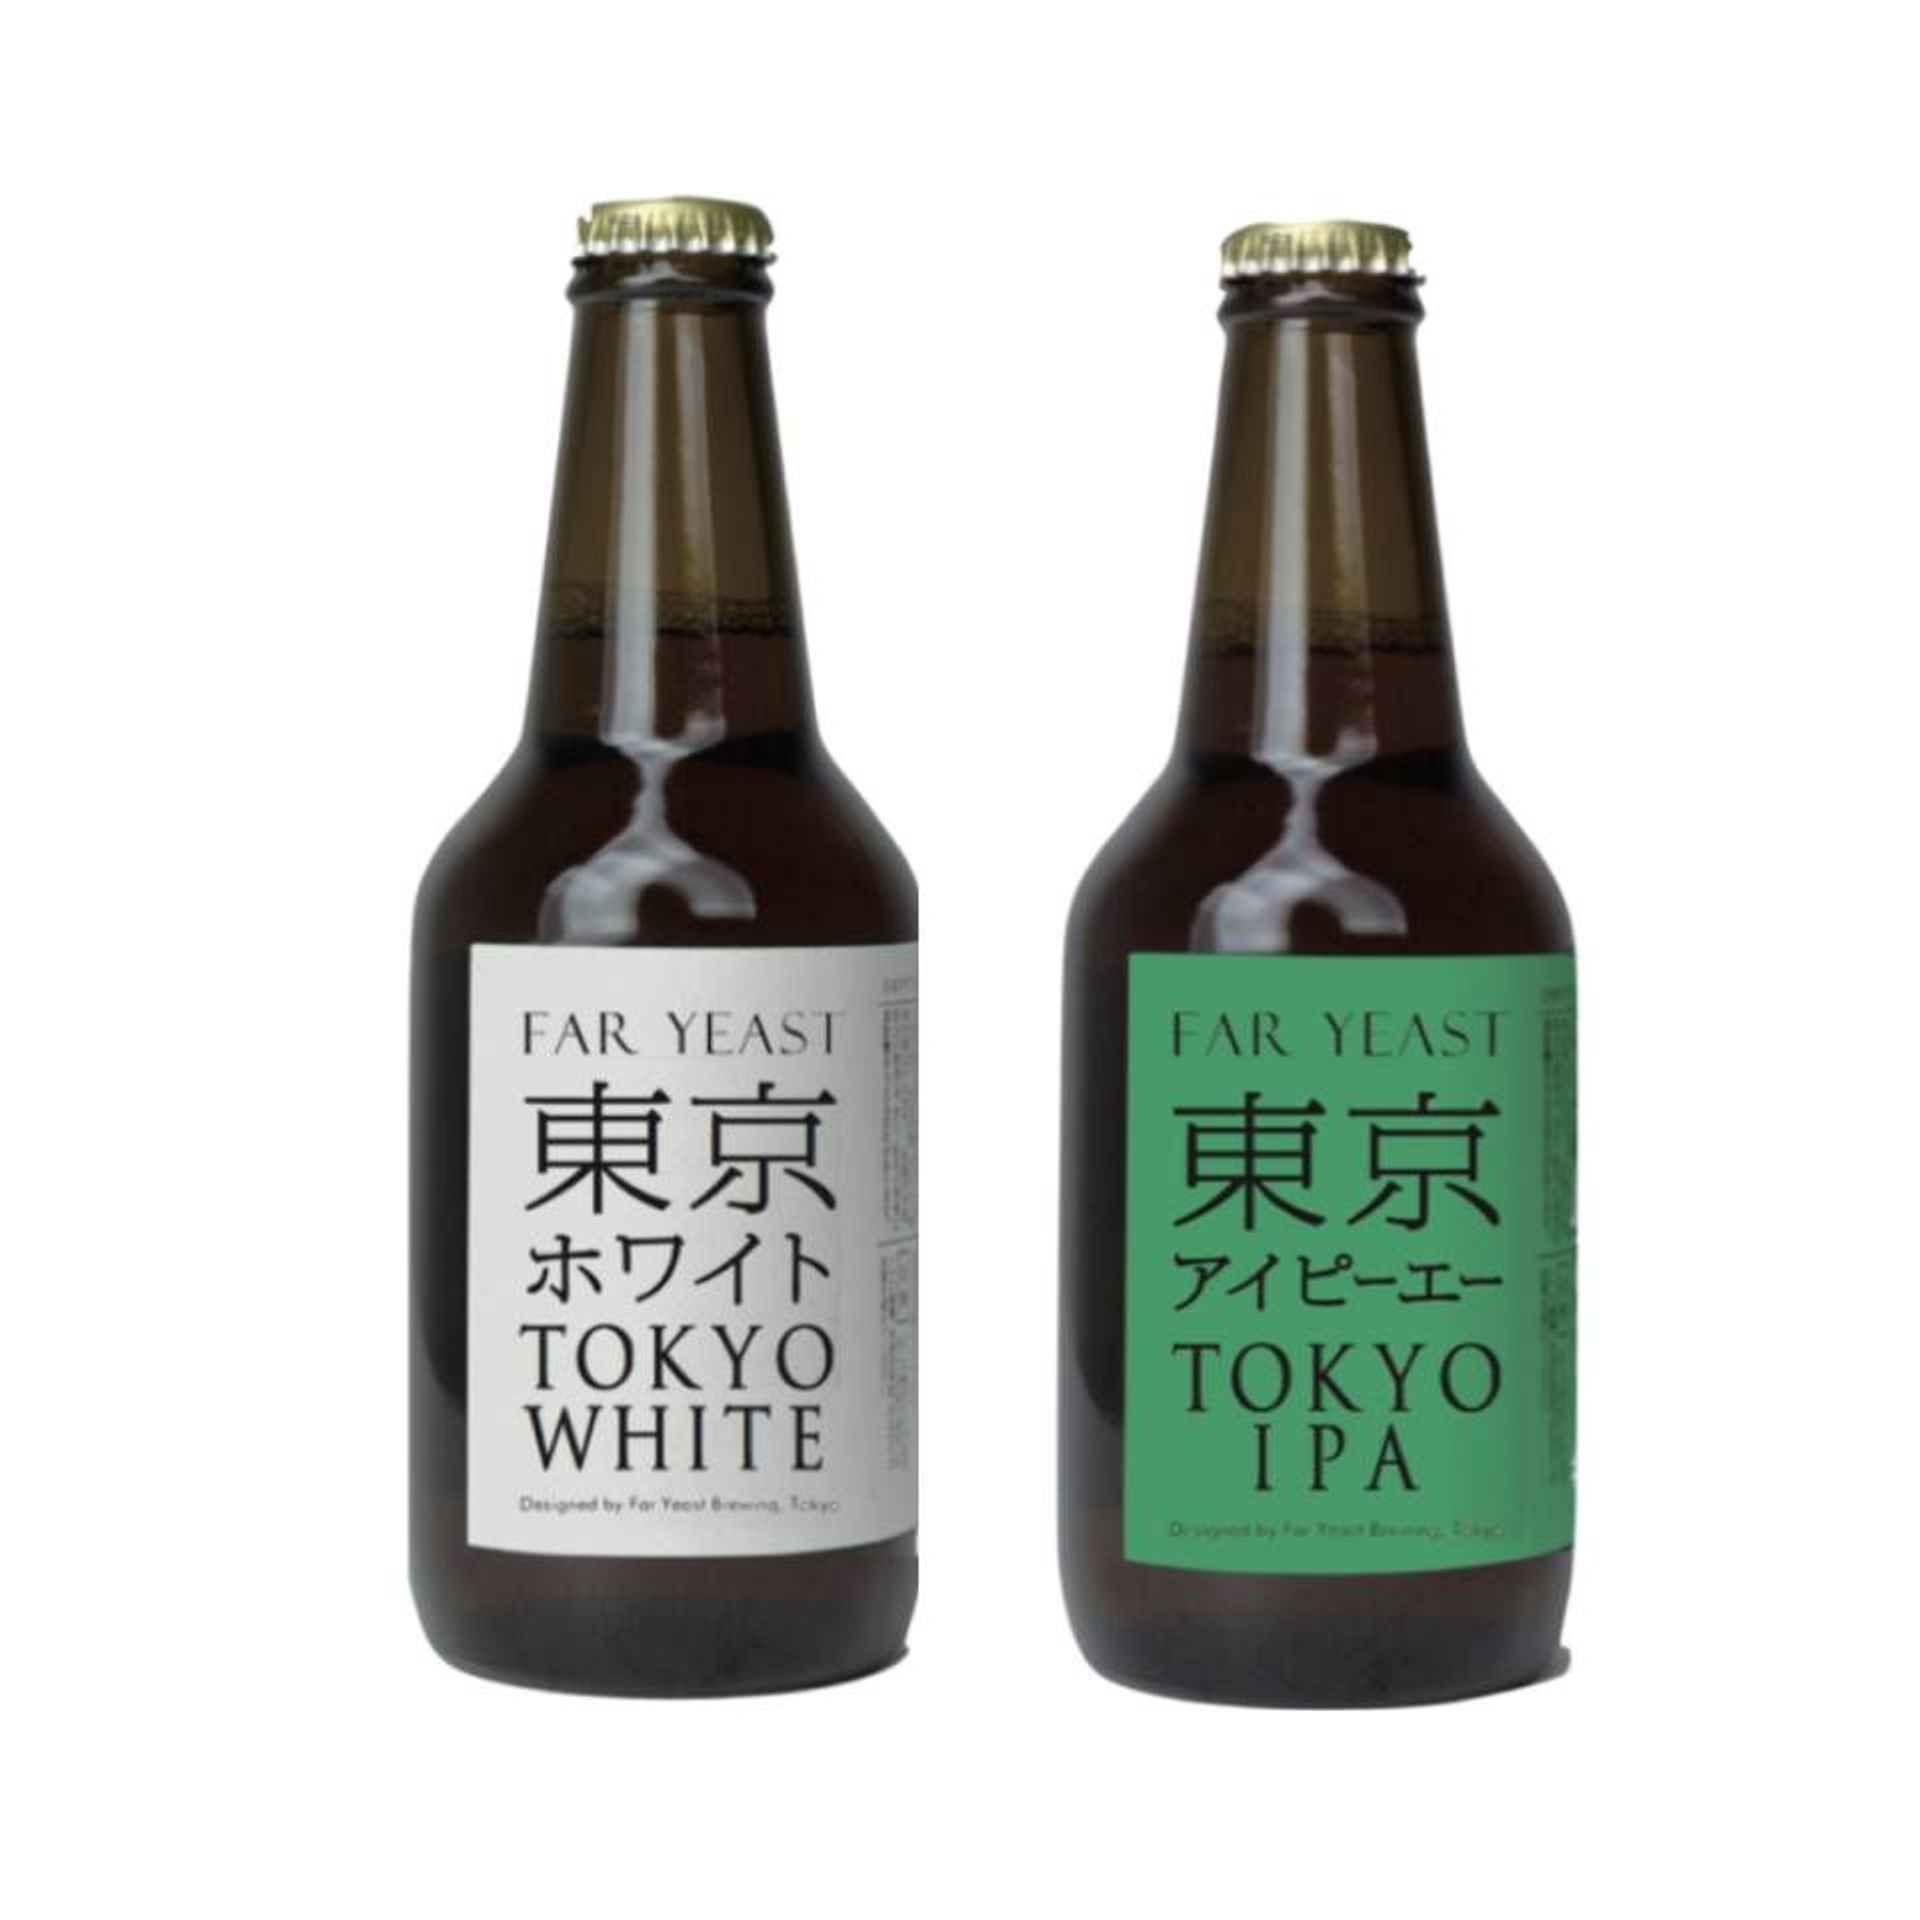 Tokyo Craft Beer IPA, 330ml bottle (ABV 5%)